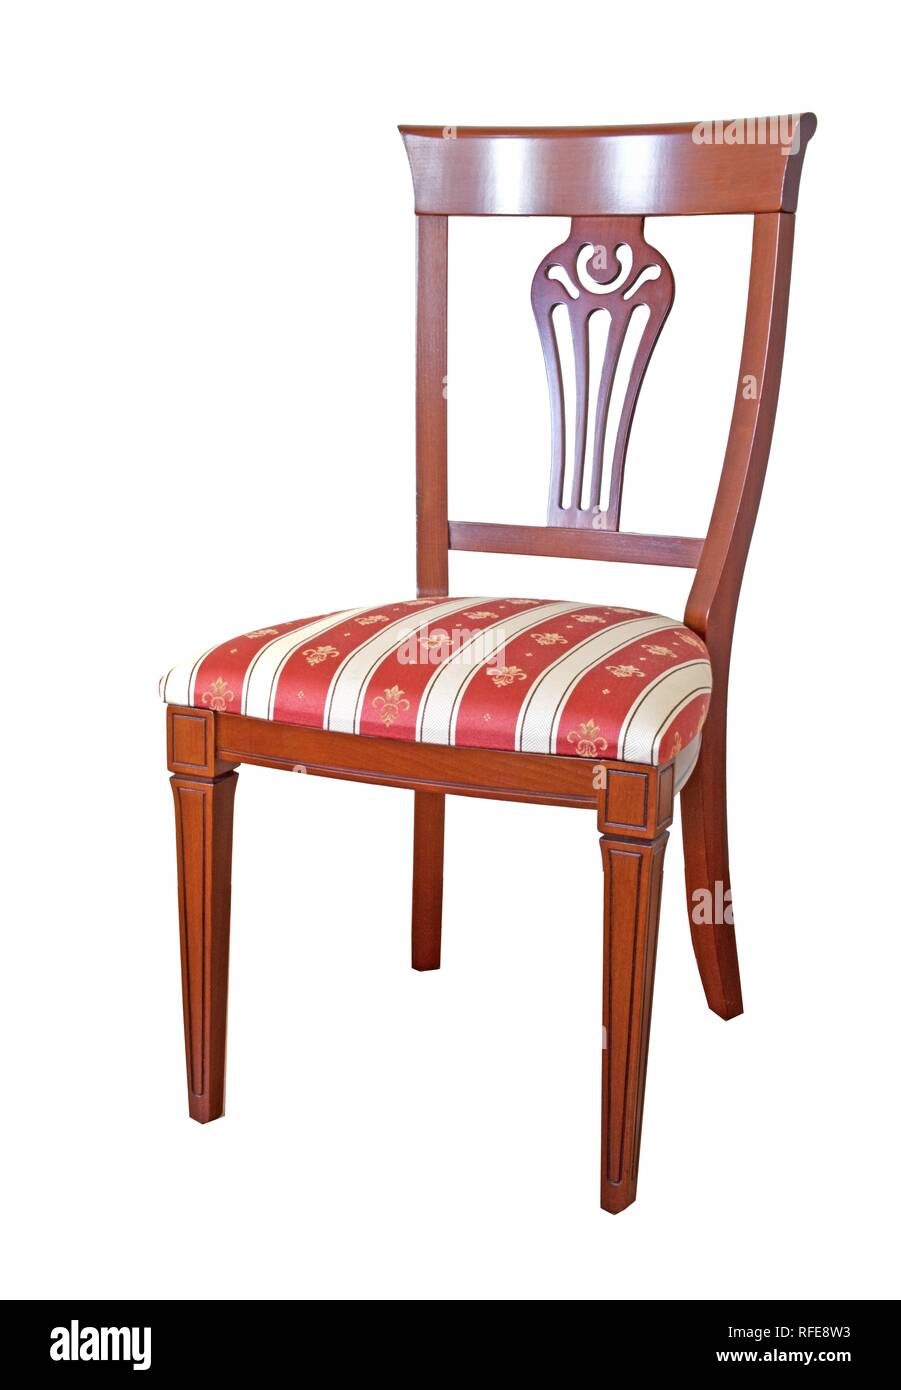 La sedia è fatta in stile classico dal rosso di legno e tappezzeria da un arazzo. Foto Stock